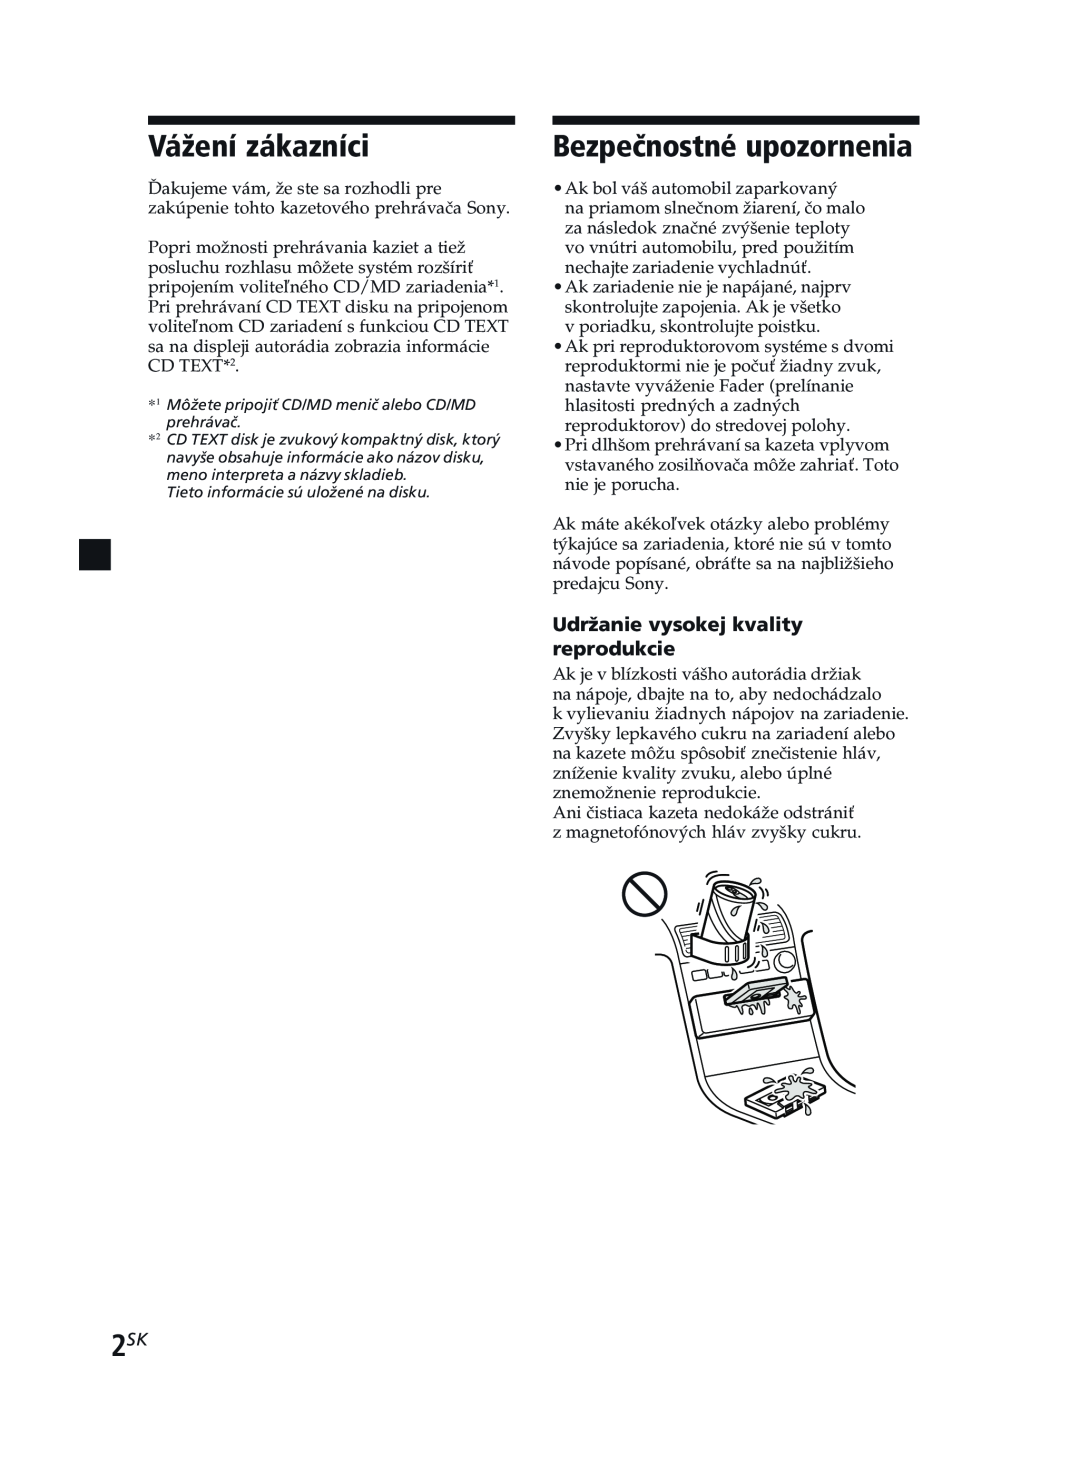 Sony XR-CA370X manual Vážení zákazníci, Bezpečnostné upozornenia, Udržanie vysokej kvality reprodukcie 